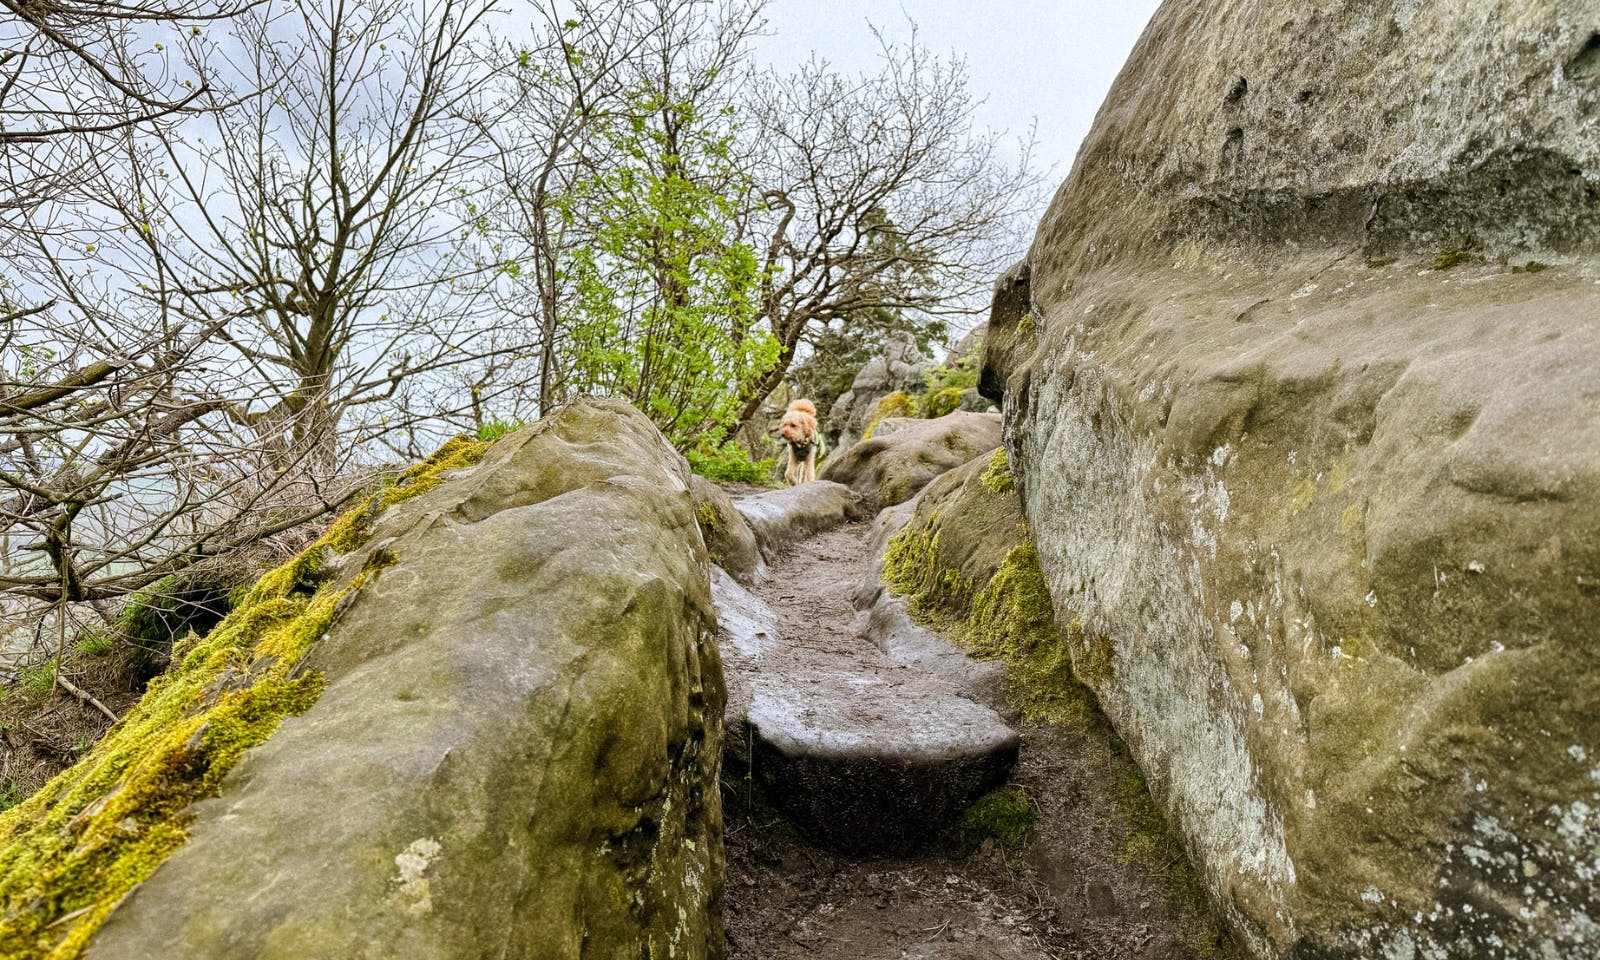 Teufelsmauer im Harz mit Hund